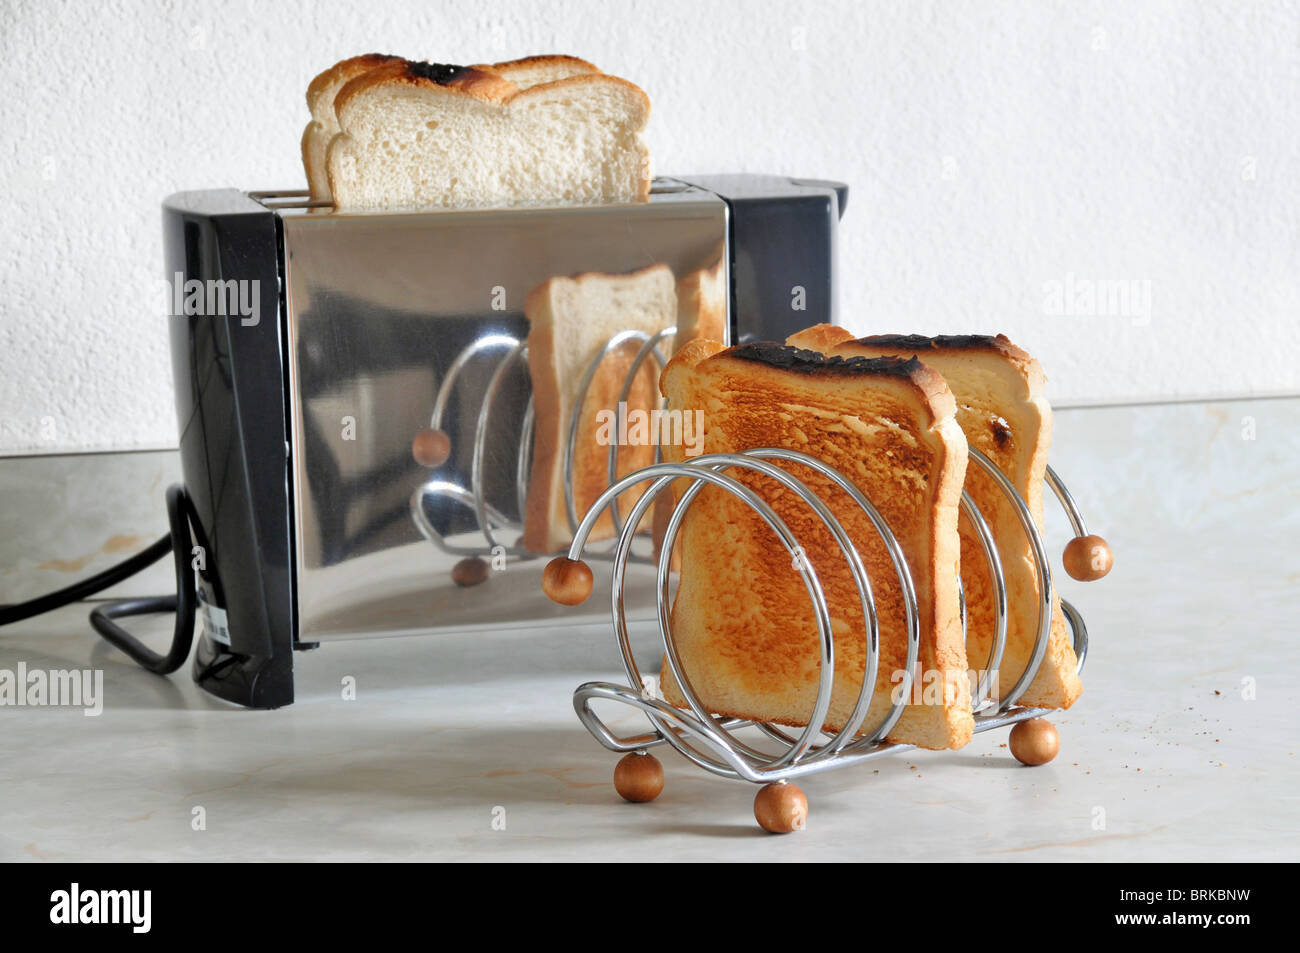 Du pain dans un grille-pain en acier inoxydable avec un toast rack avec des tranches de pain grillé assis devant elle. Banque D'Images